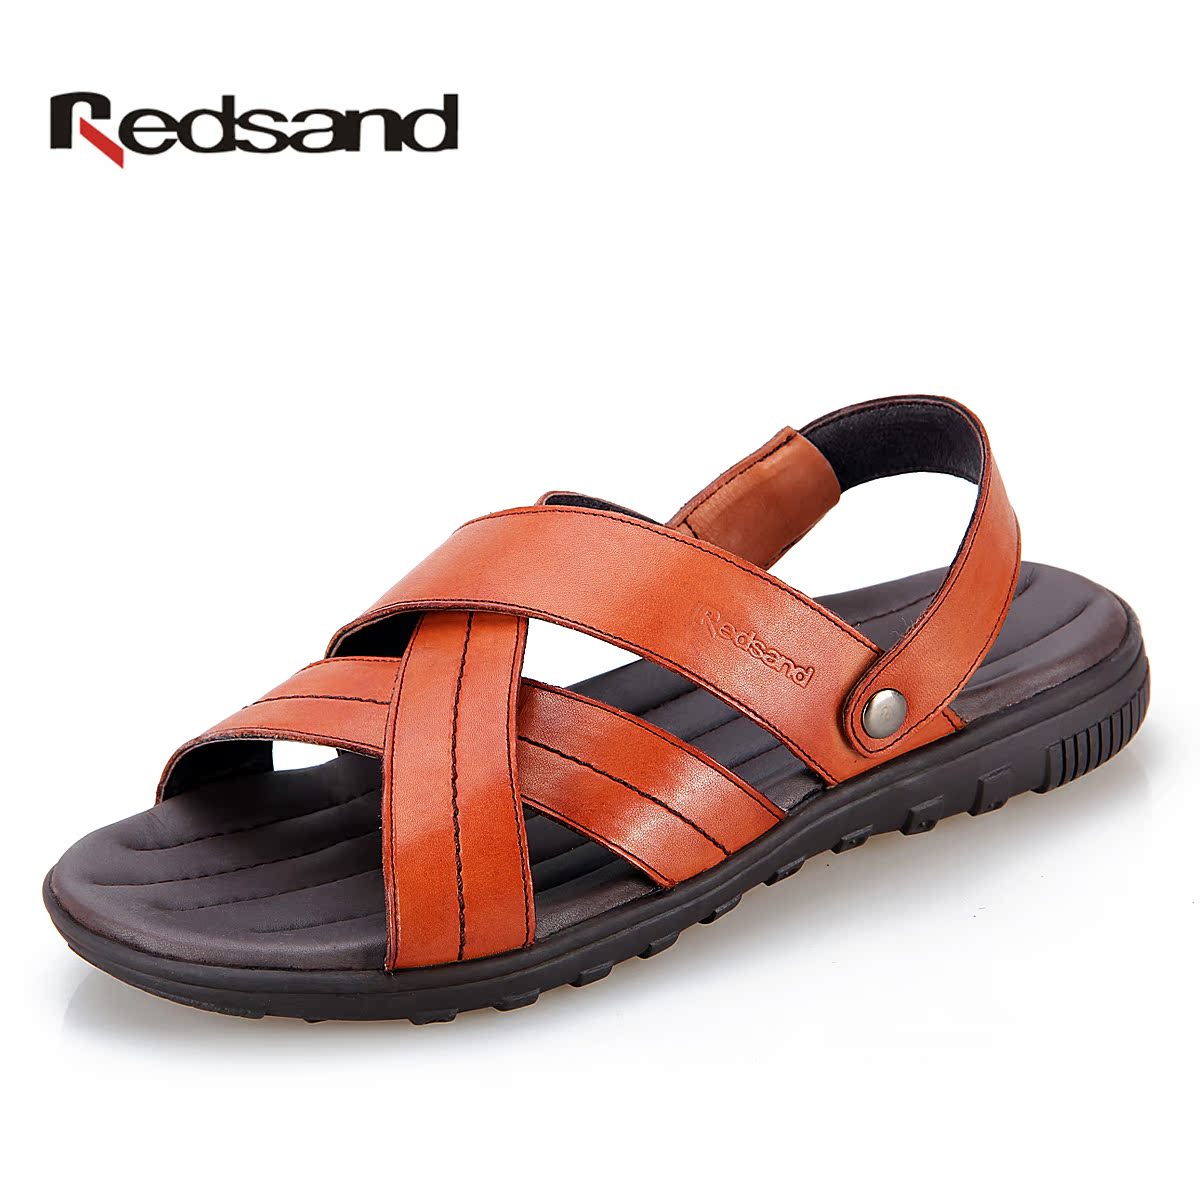 redsand红砂男凉鞋2013夏季新款两穿头层牛皮真皮男士沙滩凉拖鞋